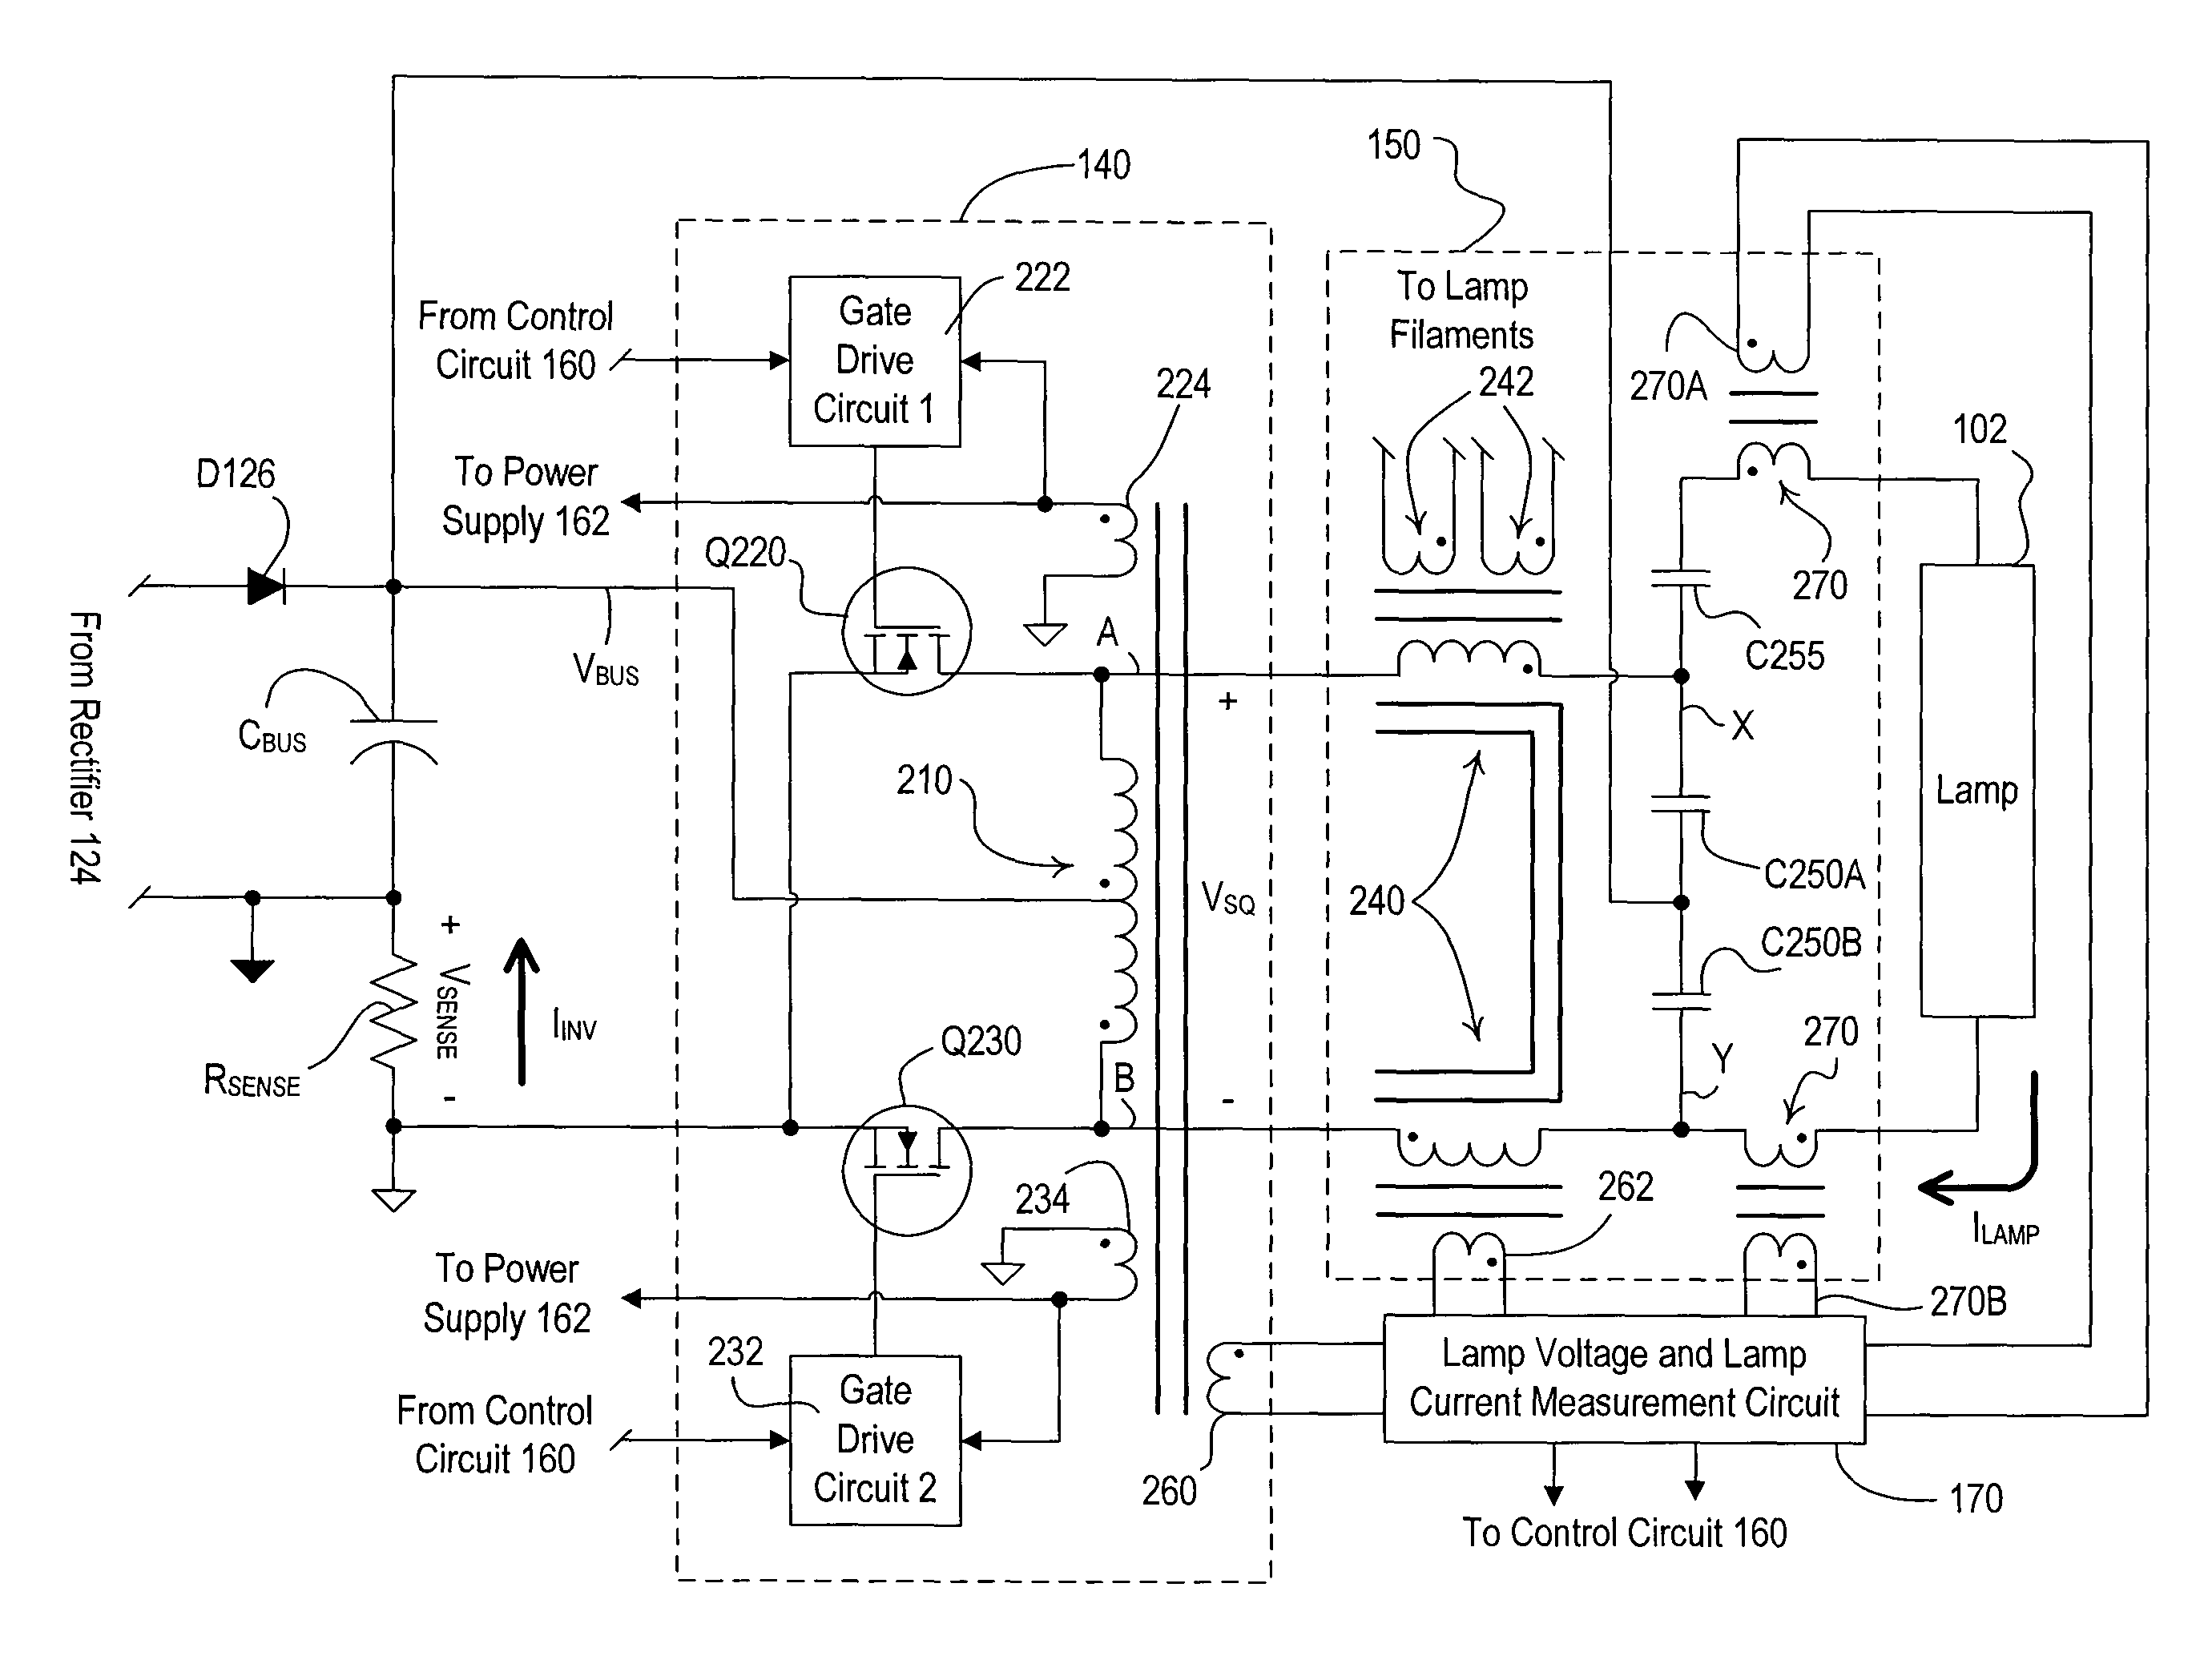 Electronic ballast having a partially self-oscillating inverter circuit